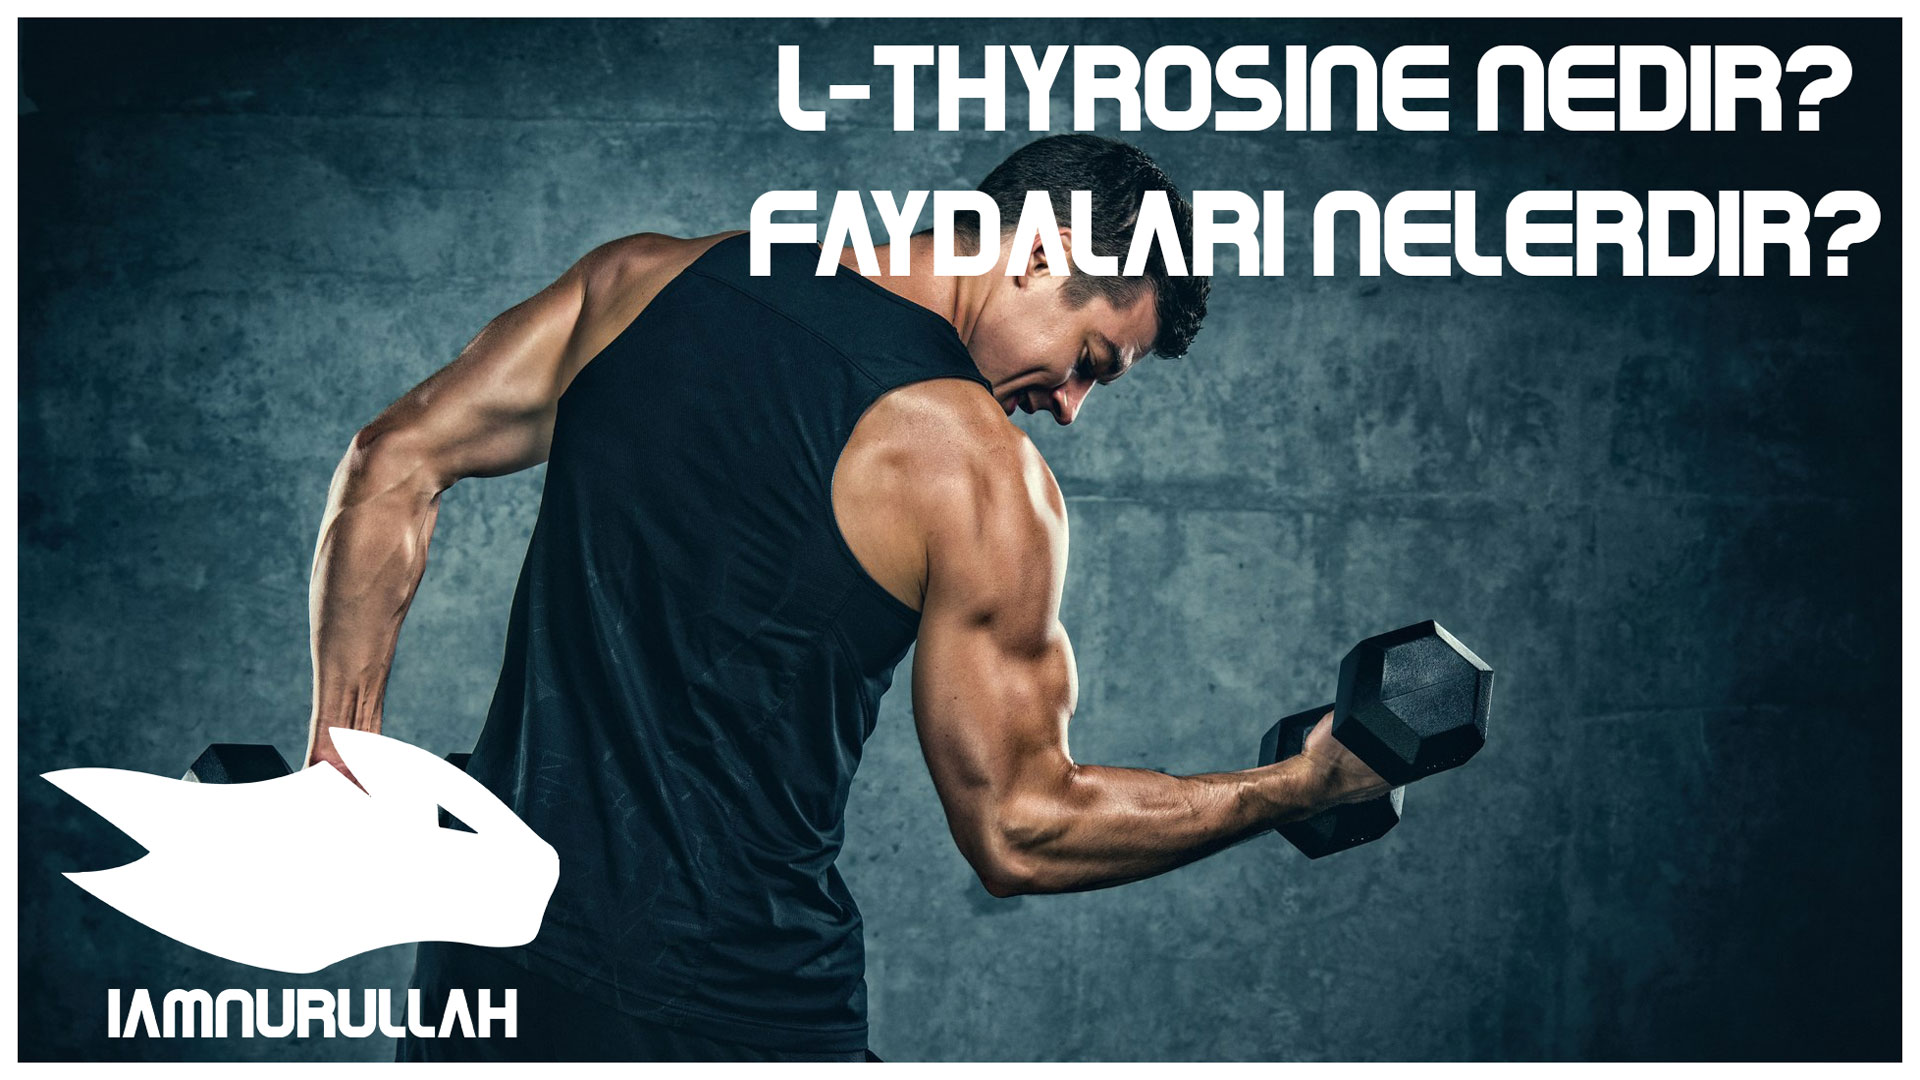 l-thyrosine-nedir-iamnurullah